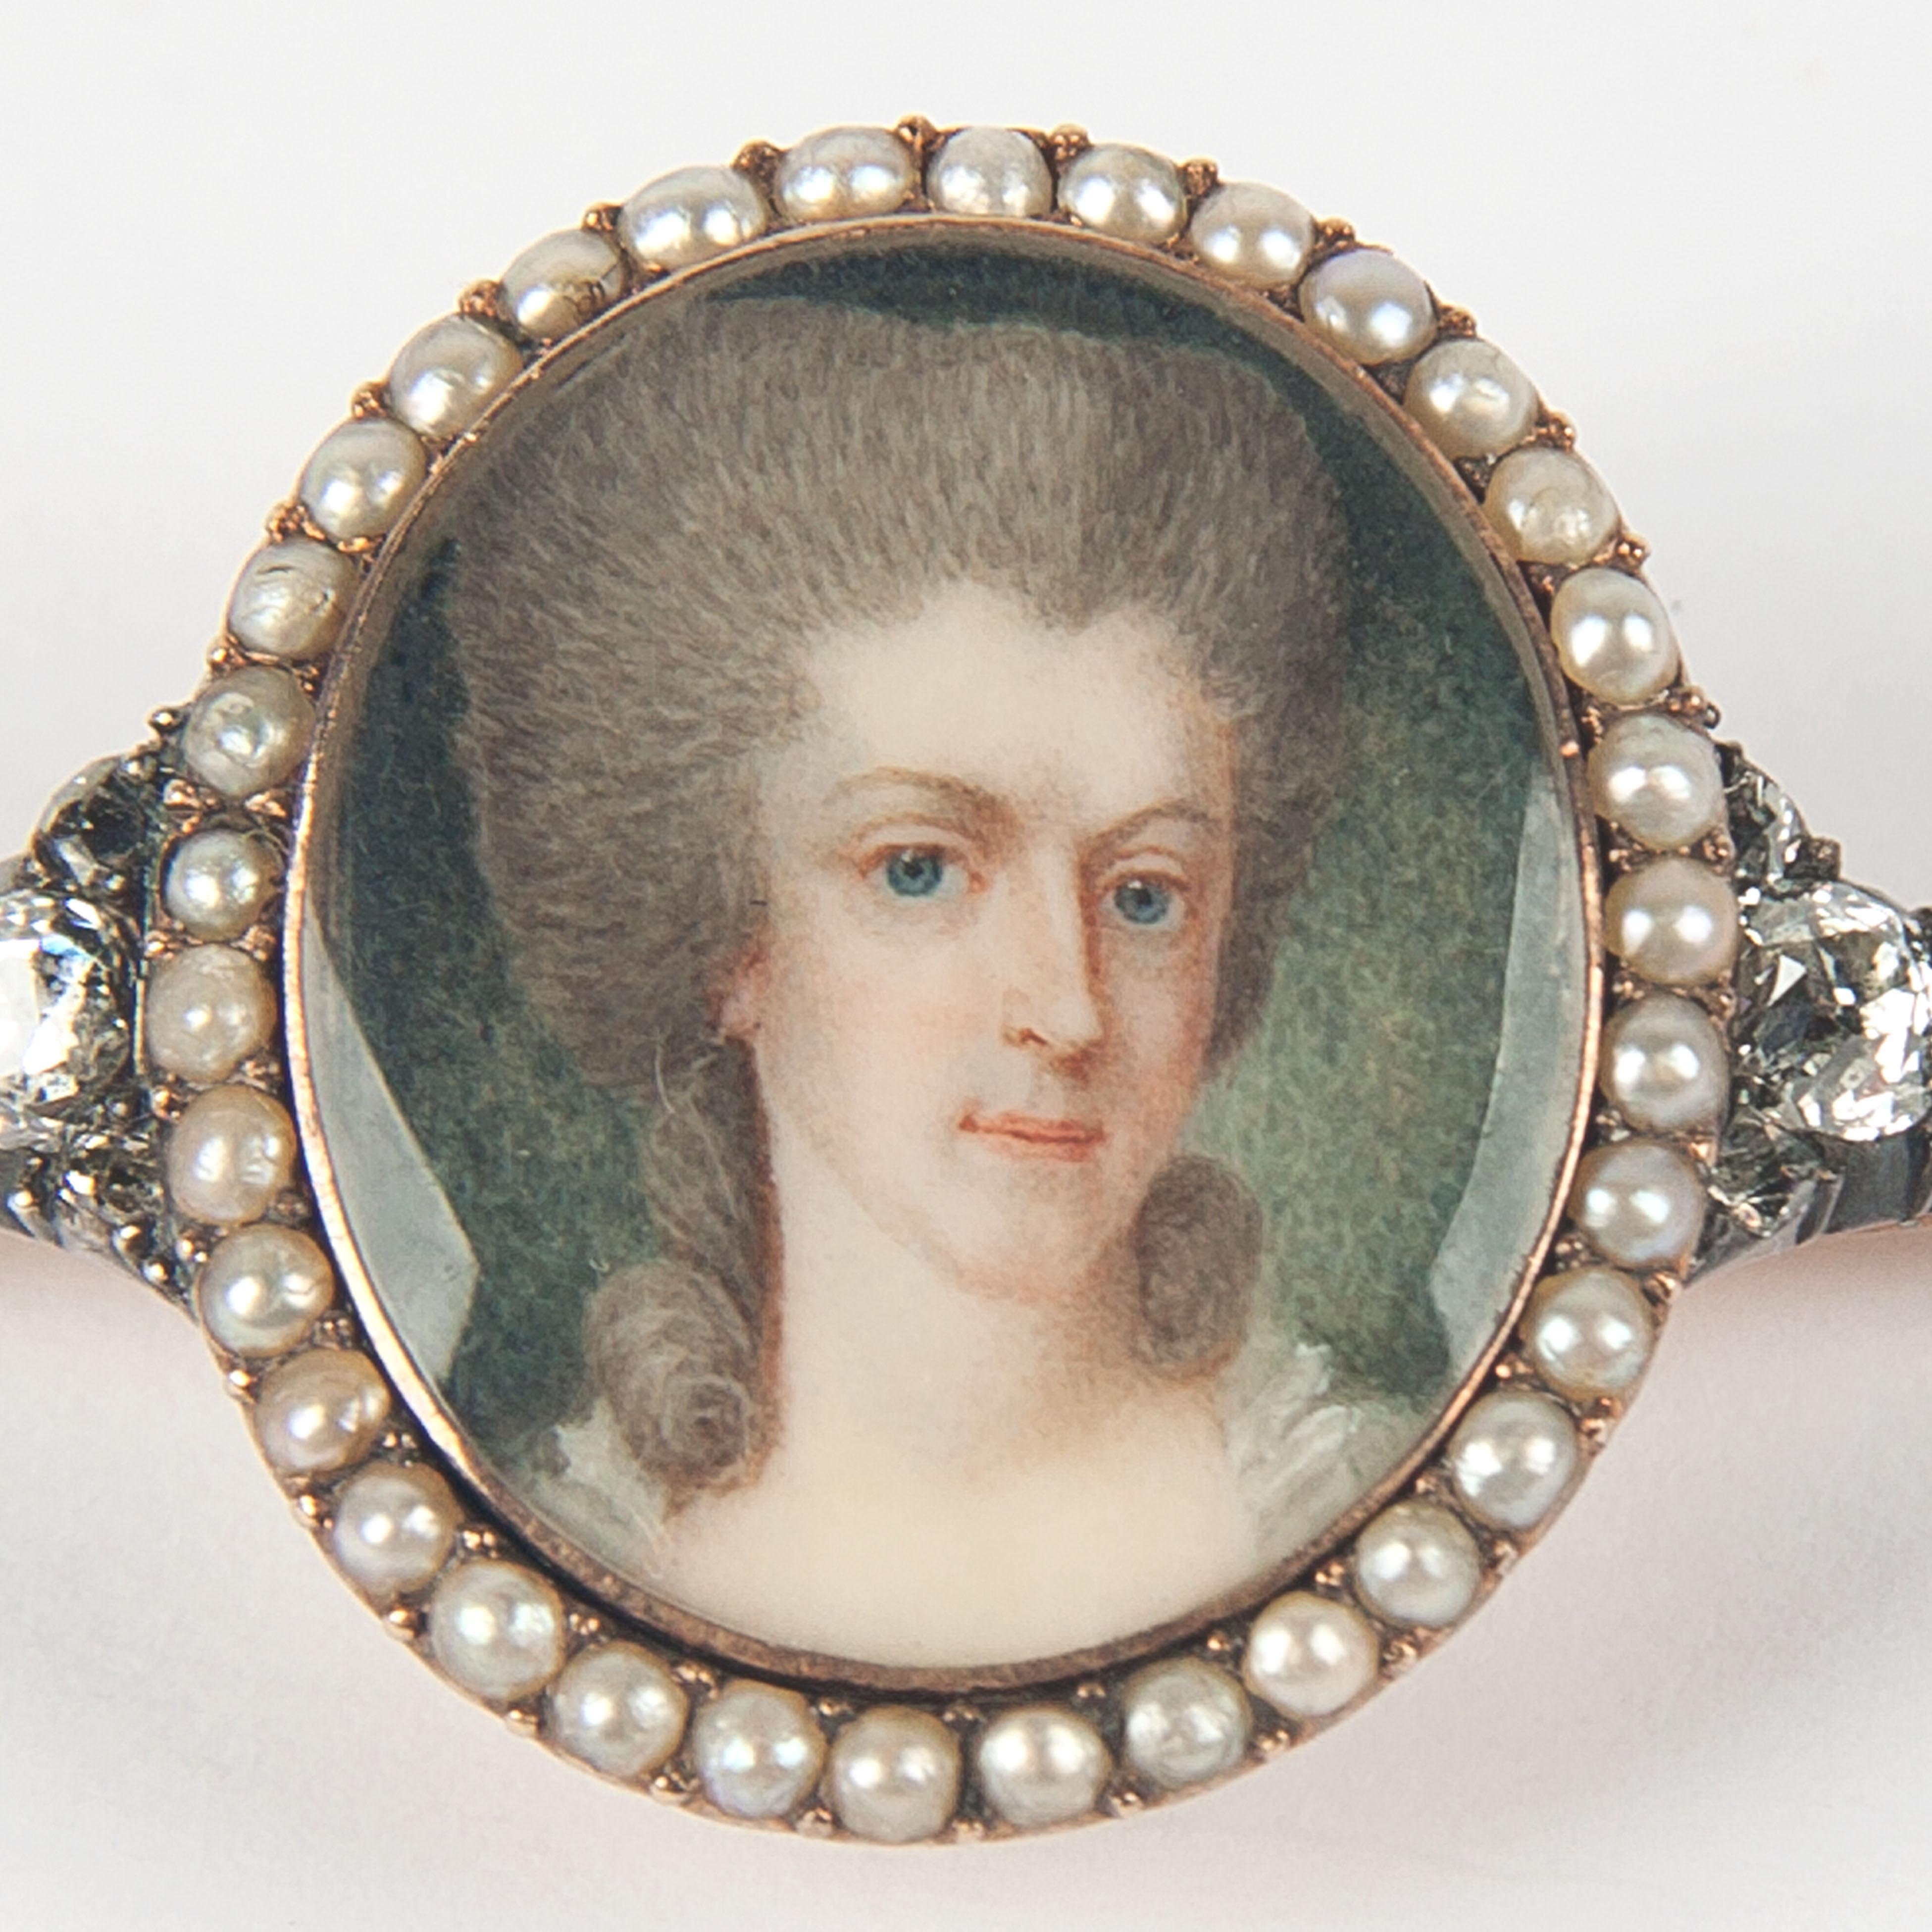 Gold portrait brooch with pearls en diamonds.